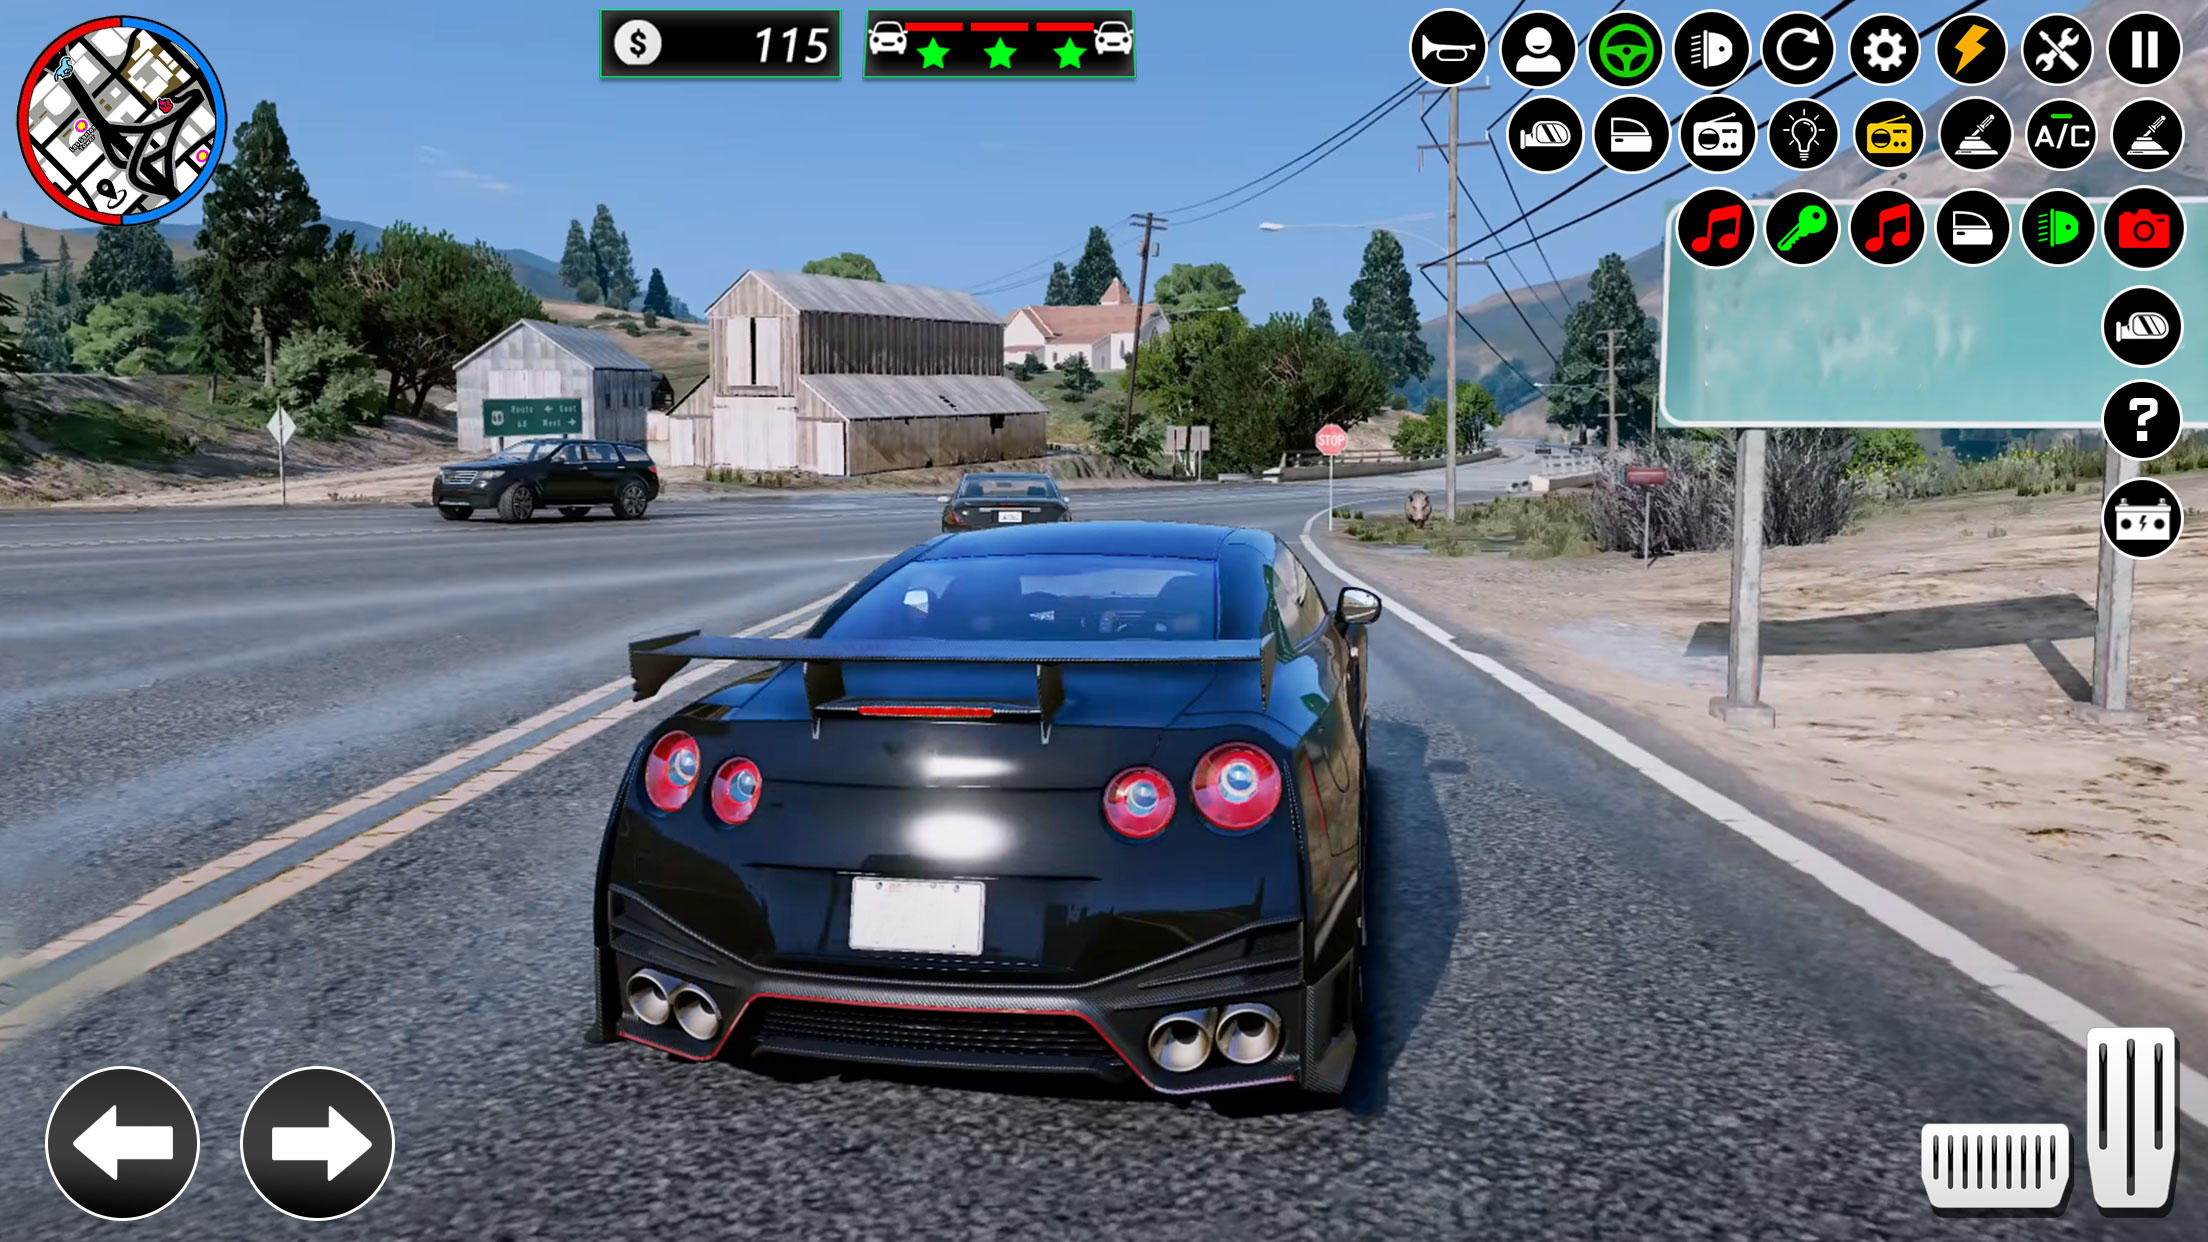 Screenshot 1 of Trò chơi thành phố tội phạm Gangster Vegas 2.1.4